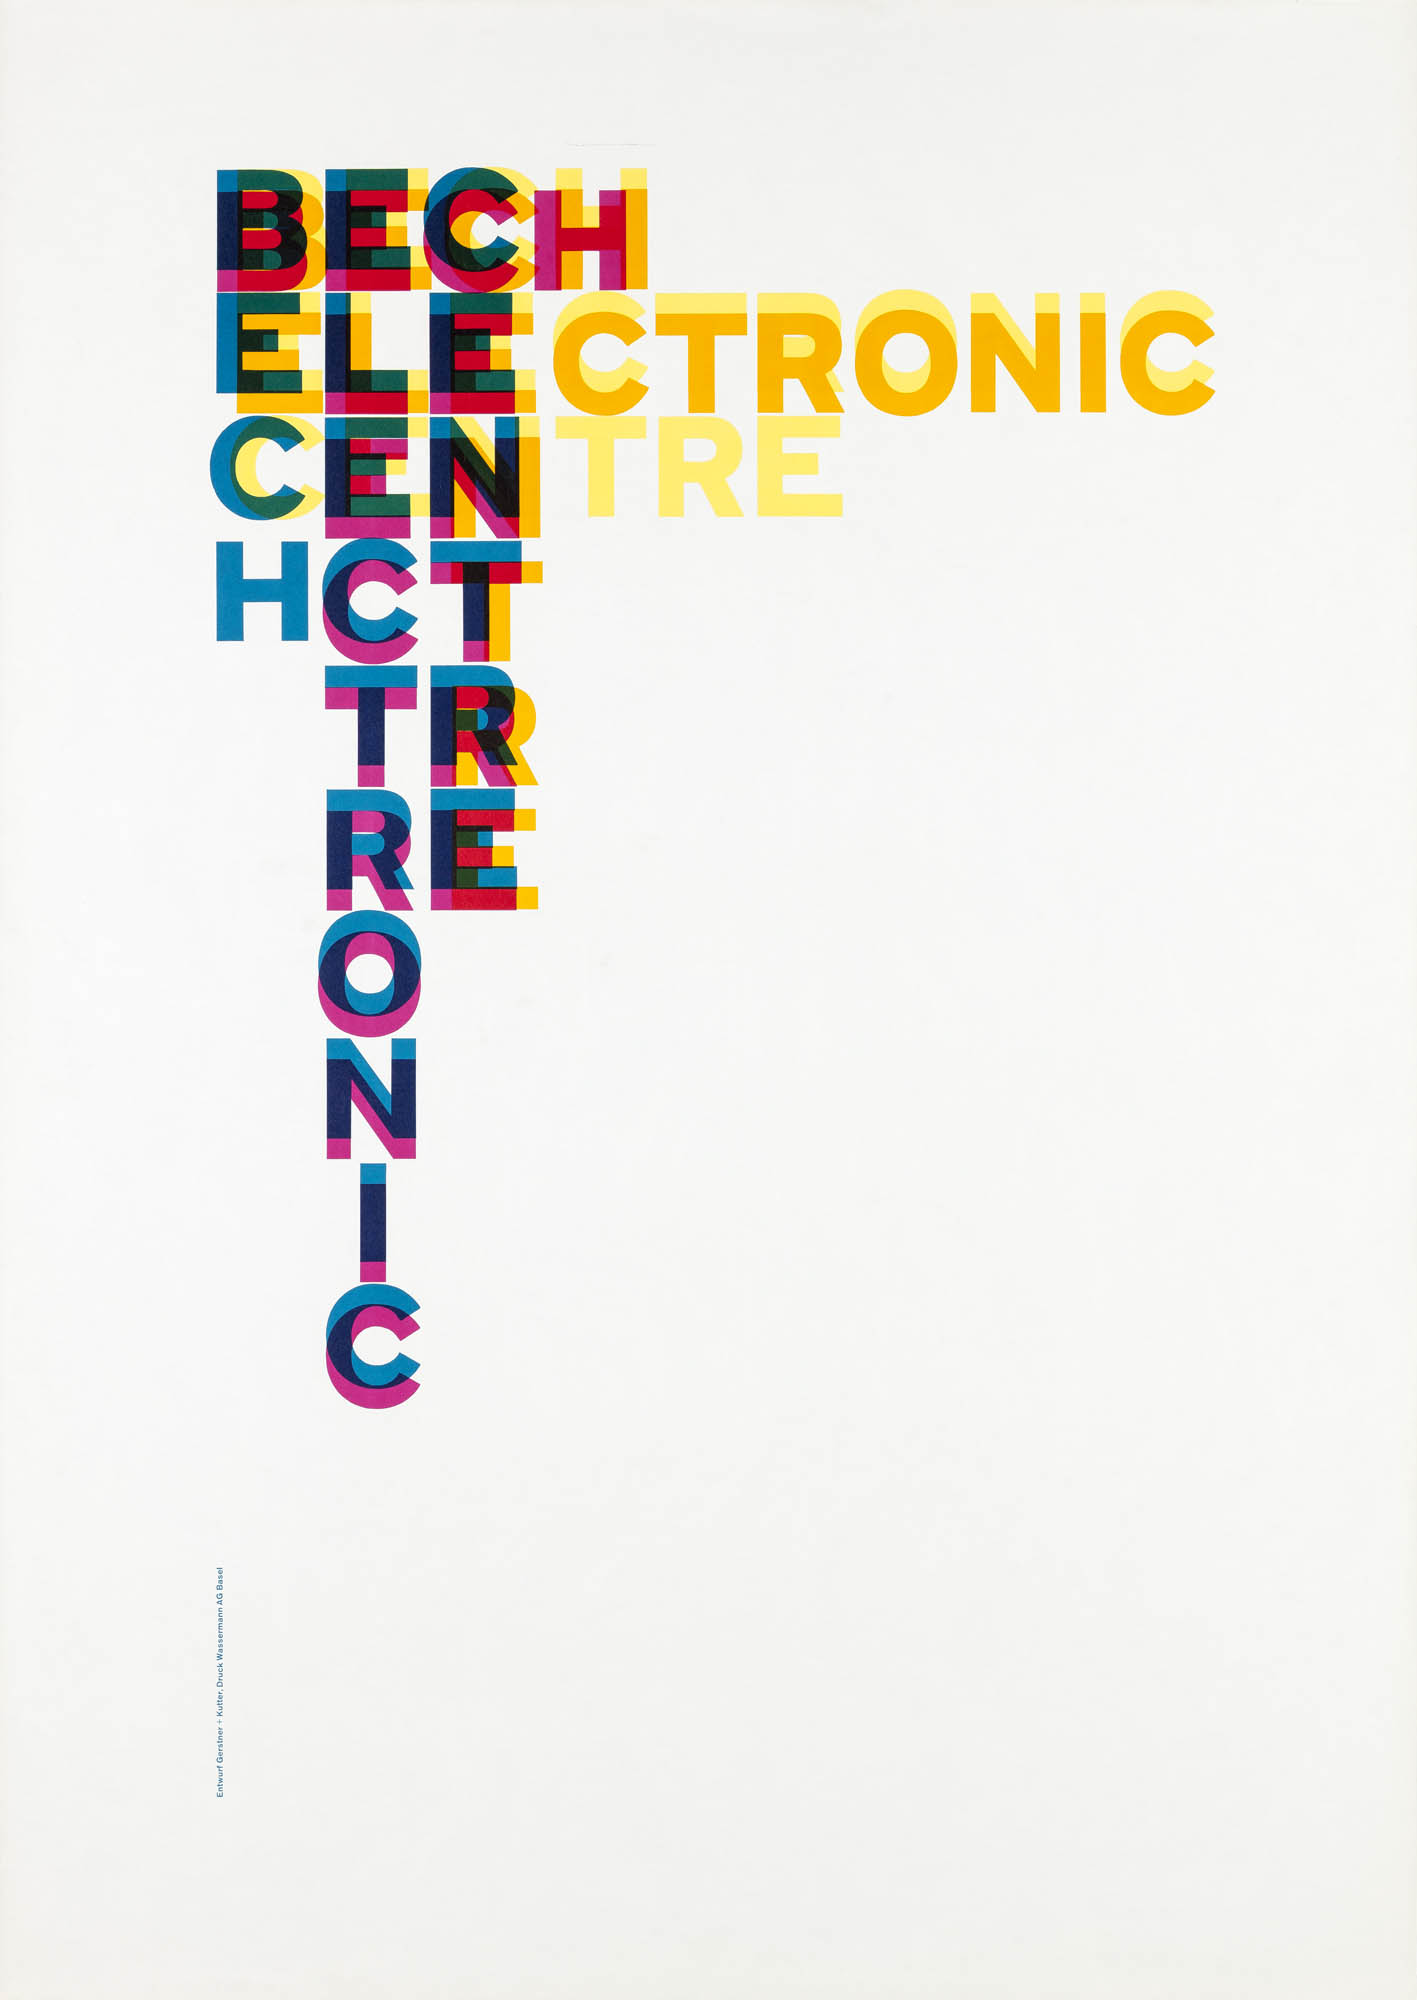 Bech Electronic Centre. Poster. Designer: Karl Gerstner